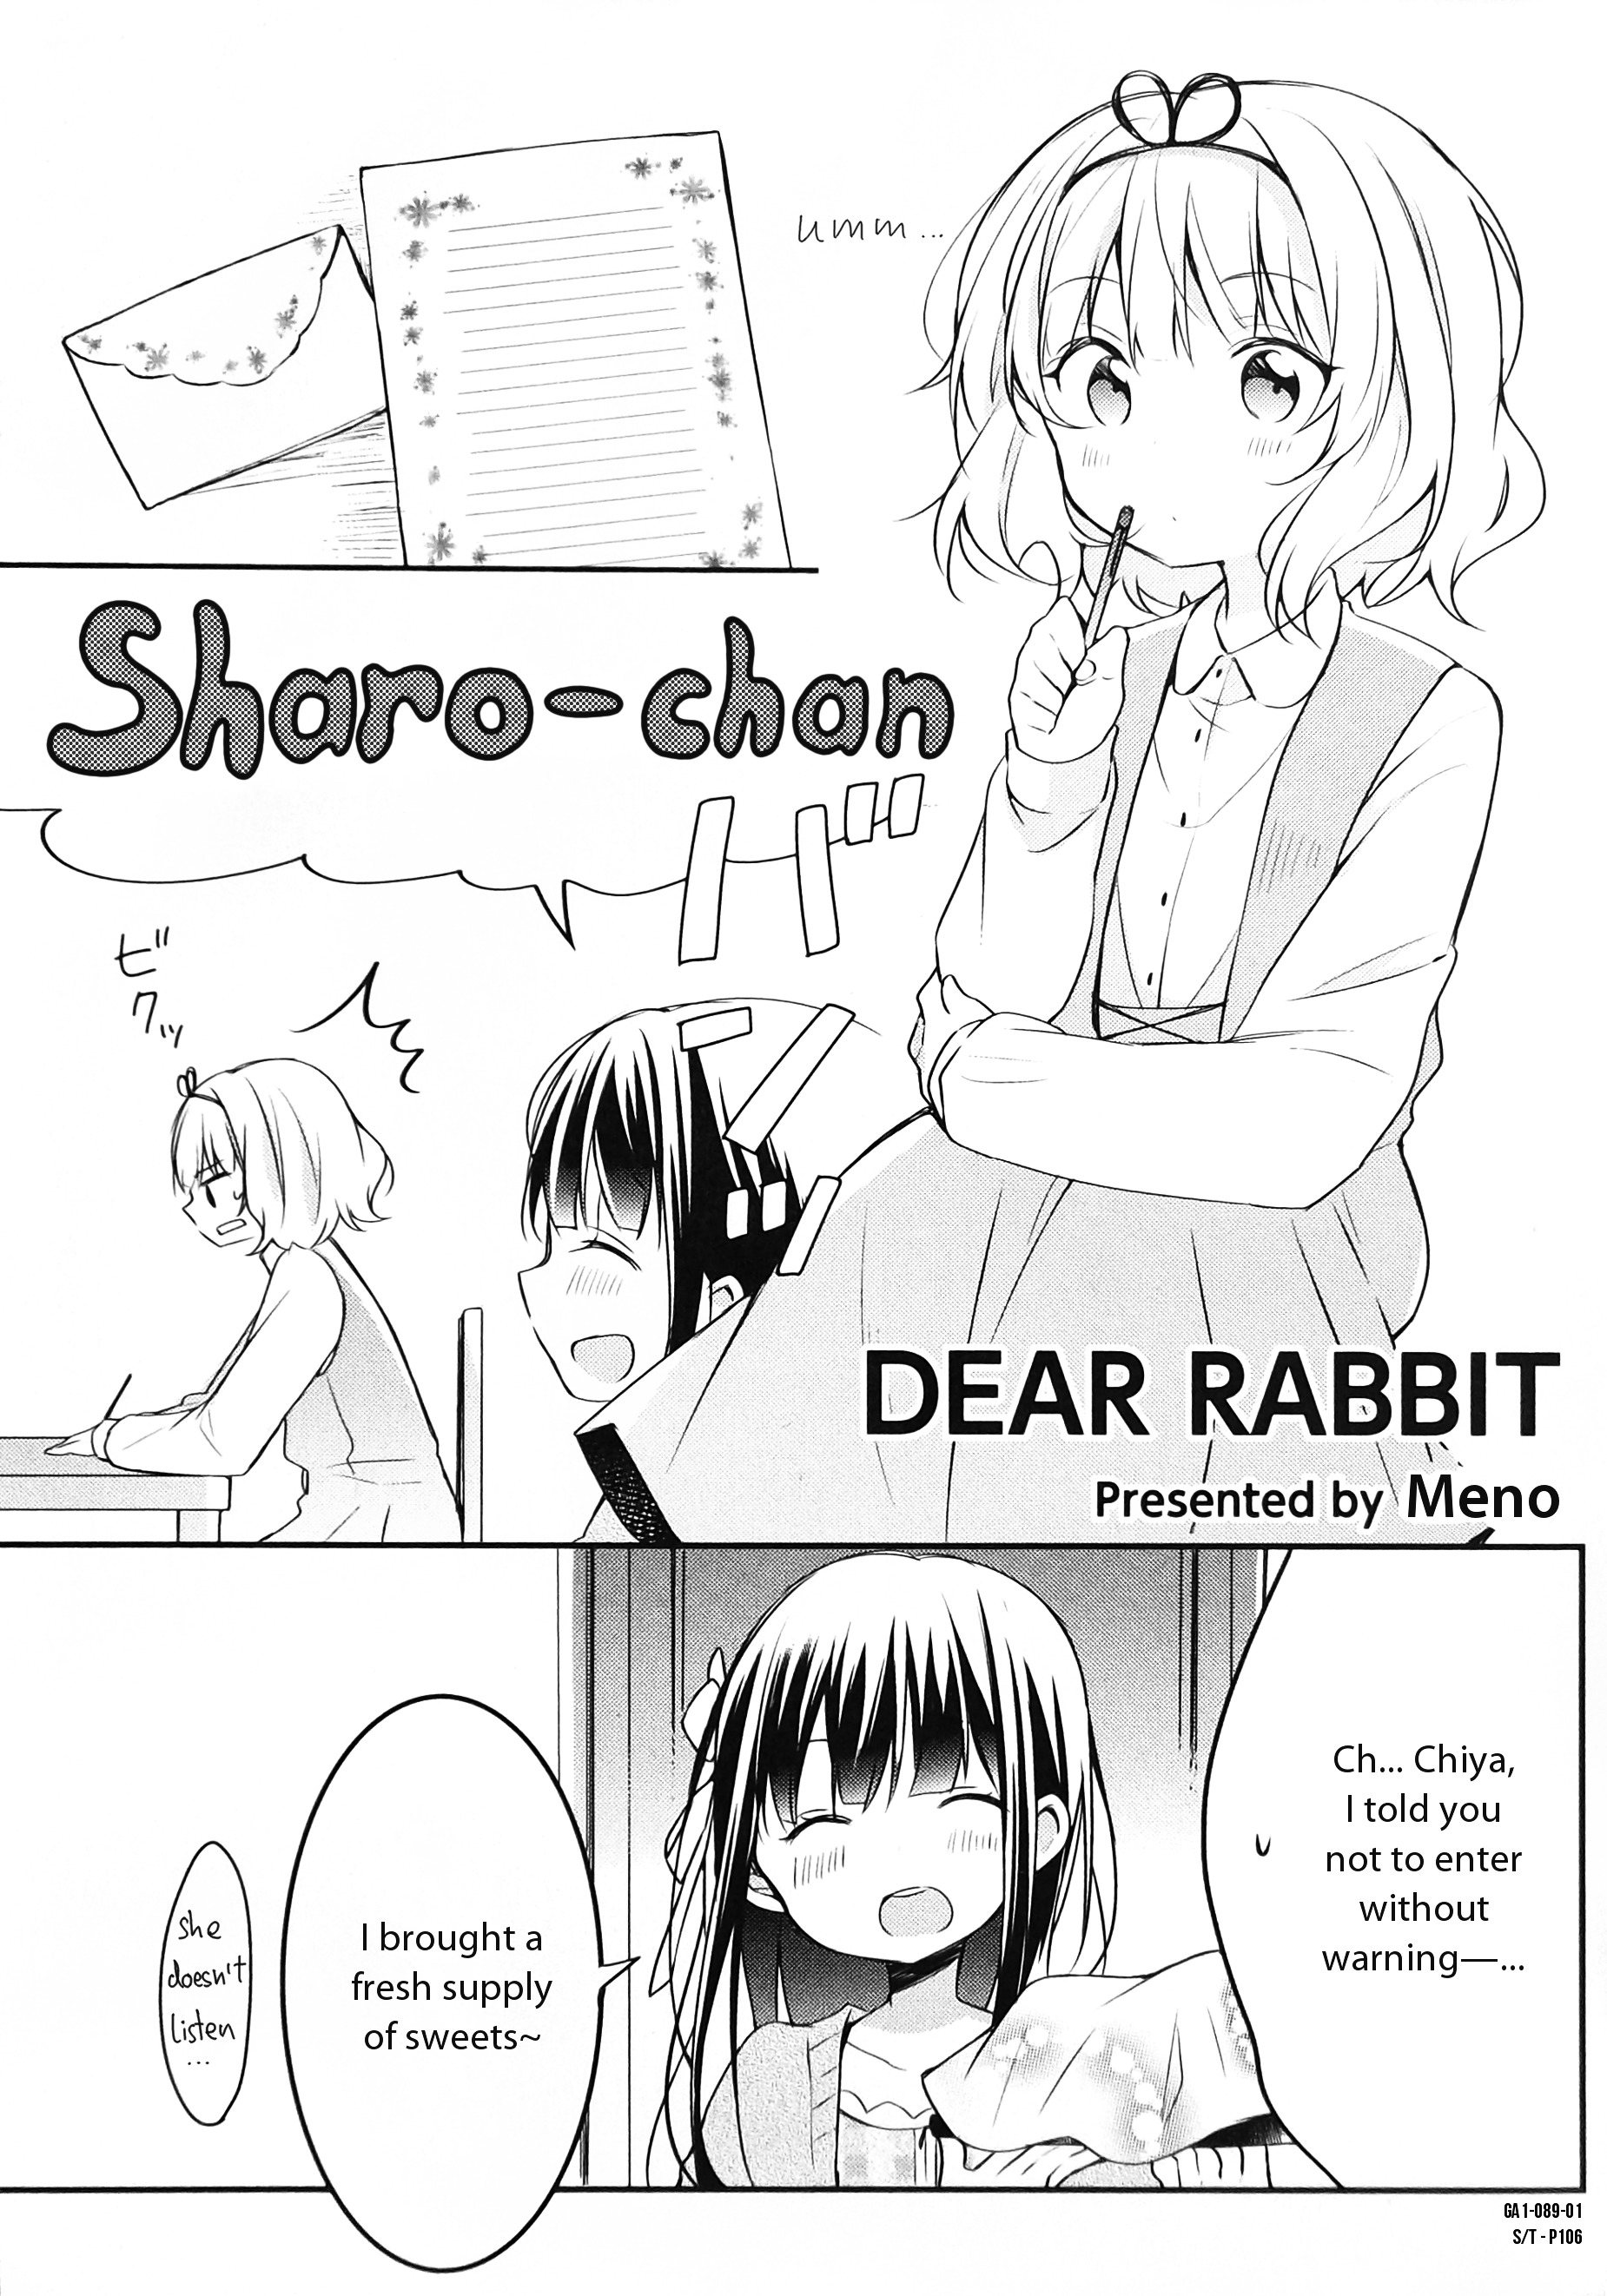 Gochuumon Wa Usagi Desu Ka? Anthology Comic Vol.1 Chapter 12 : Dear Rabbit [By: Meno] - Picture 1